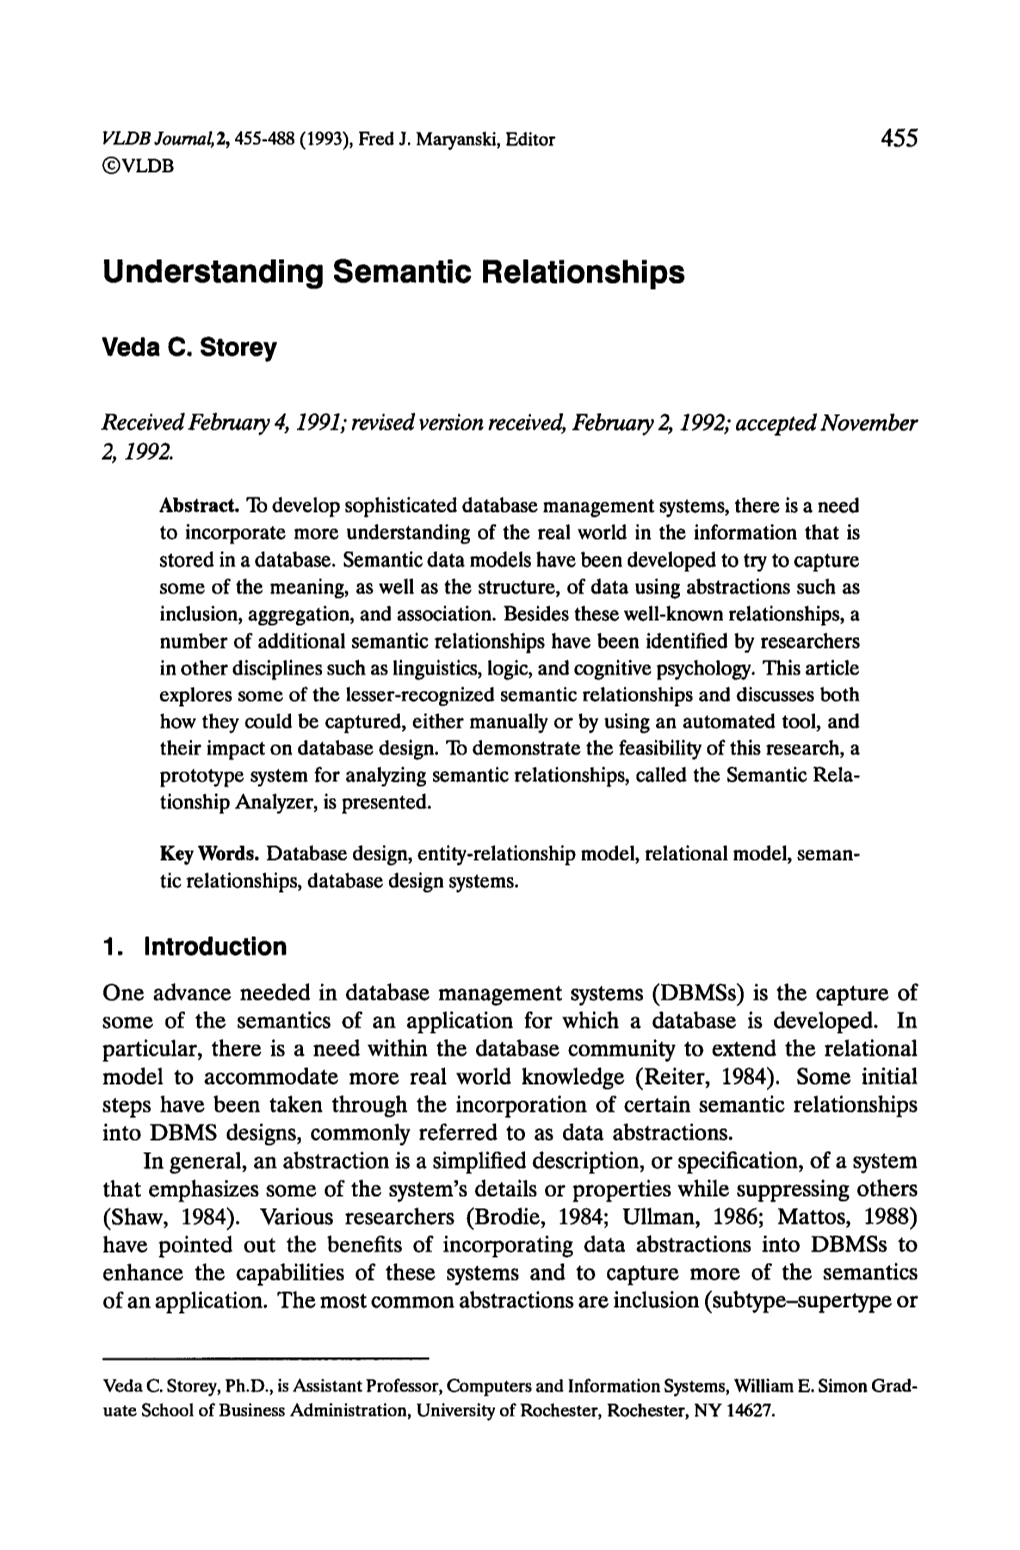 Understanding Semantic Relationships